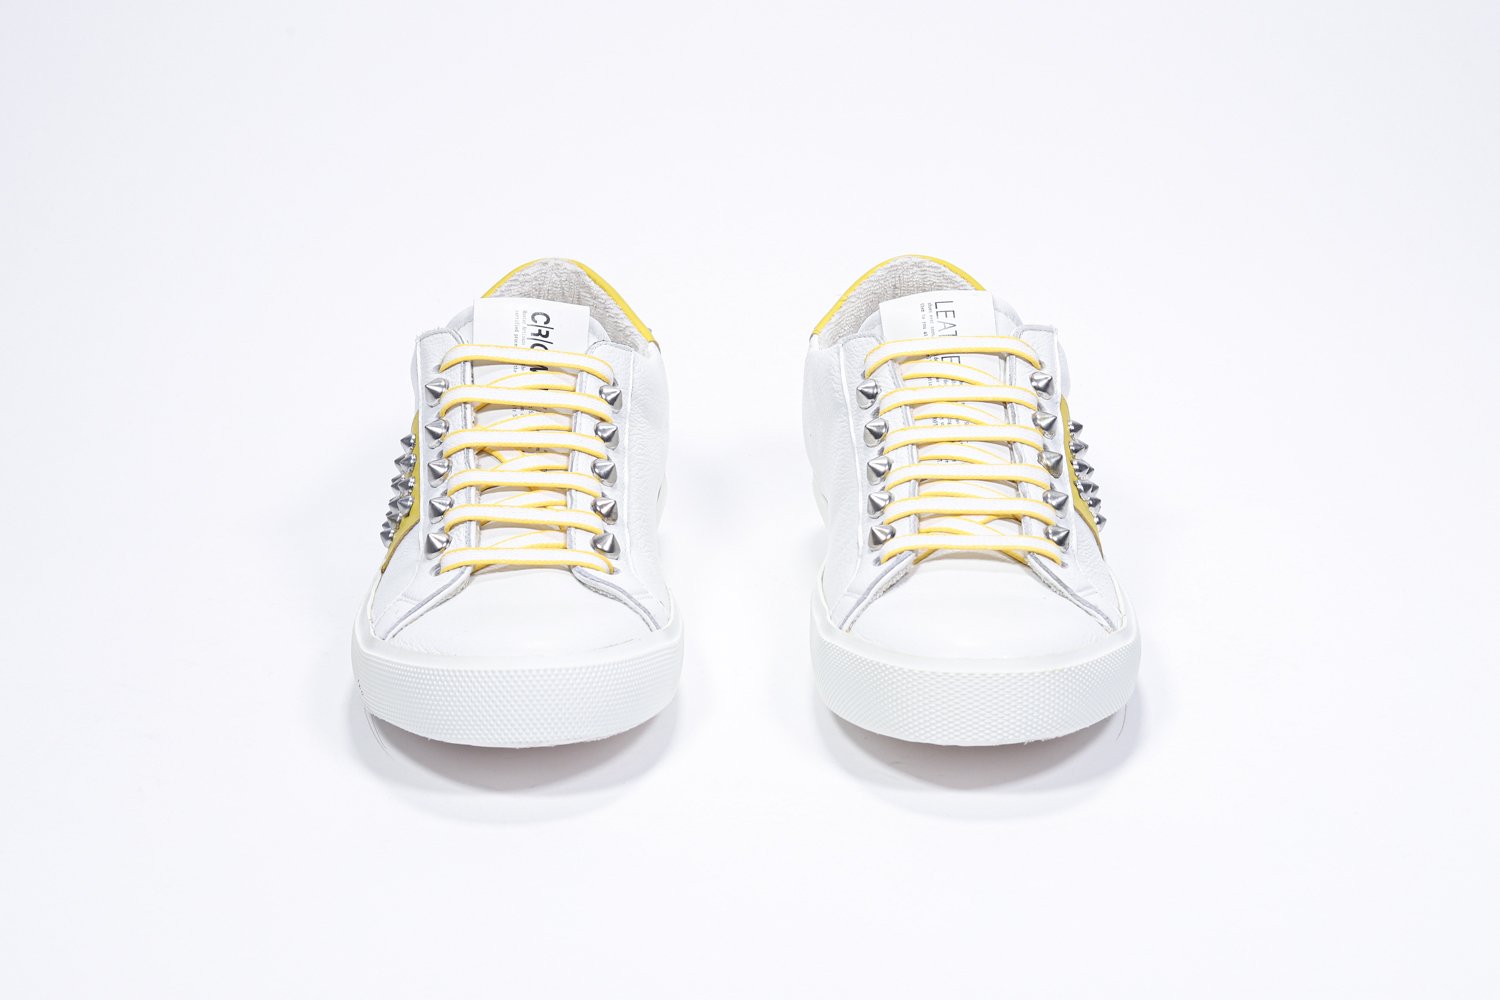 Vue de face d'un modèle bas blanc et jaune sneaker. Tige en cuir avec clous et semelle en caoutchouc blanc.